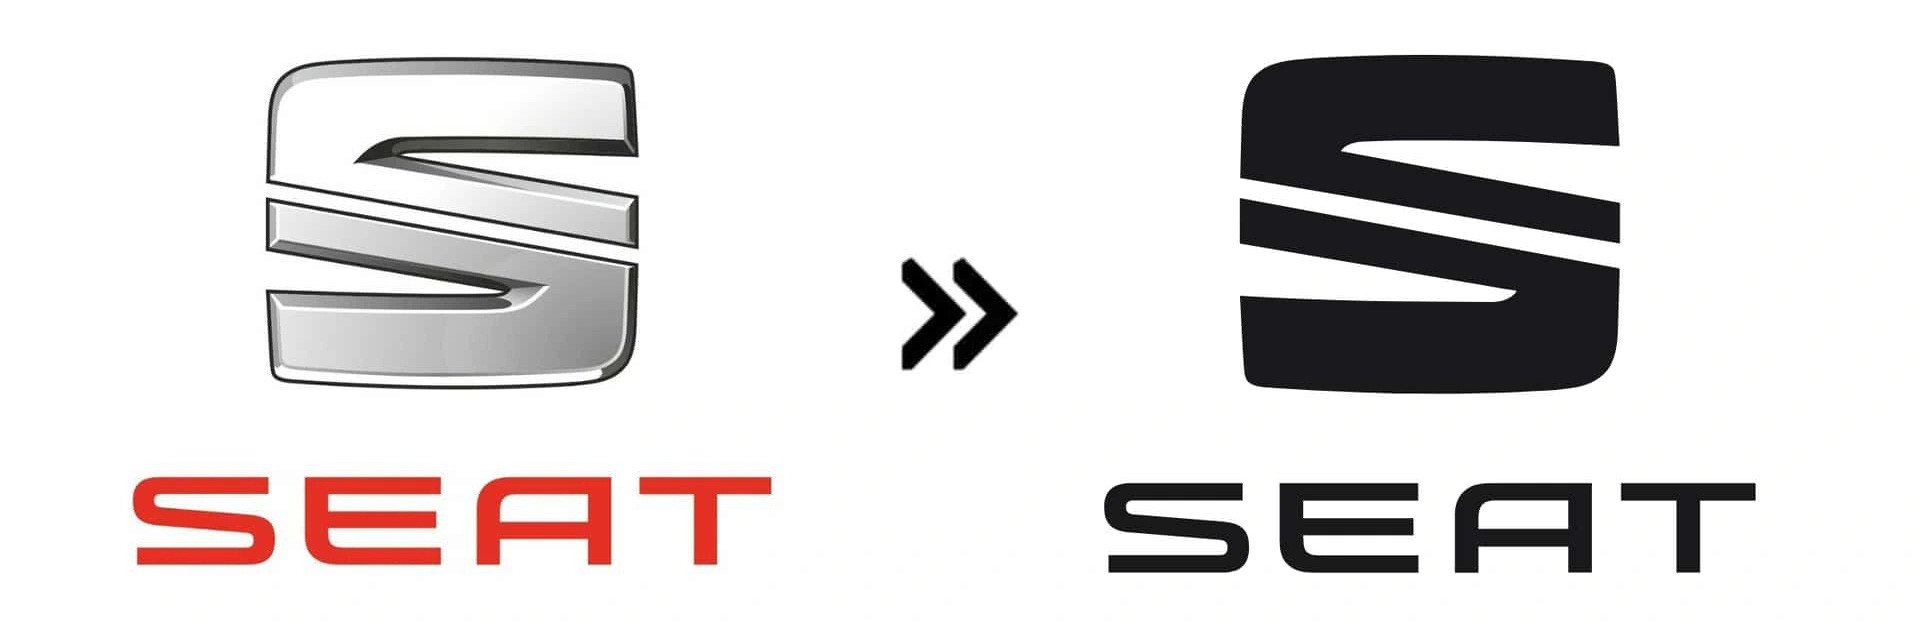 Seat (2017): Logo Seat được “tiêu chuẩn hóa” vào năm 2017 với 2 cách đổi logo thường gặp nhất: Đơn giản hóa giao diện 3D về 2D và đổi màu về đen - trắng - Ảnh: Motor1